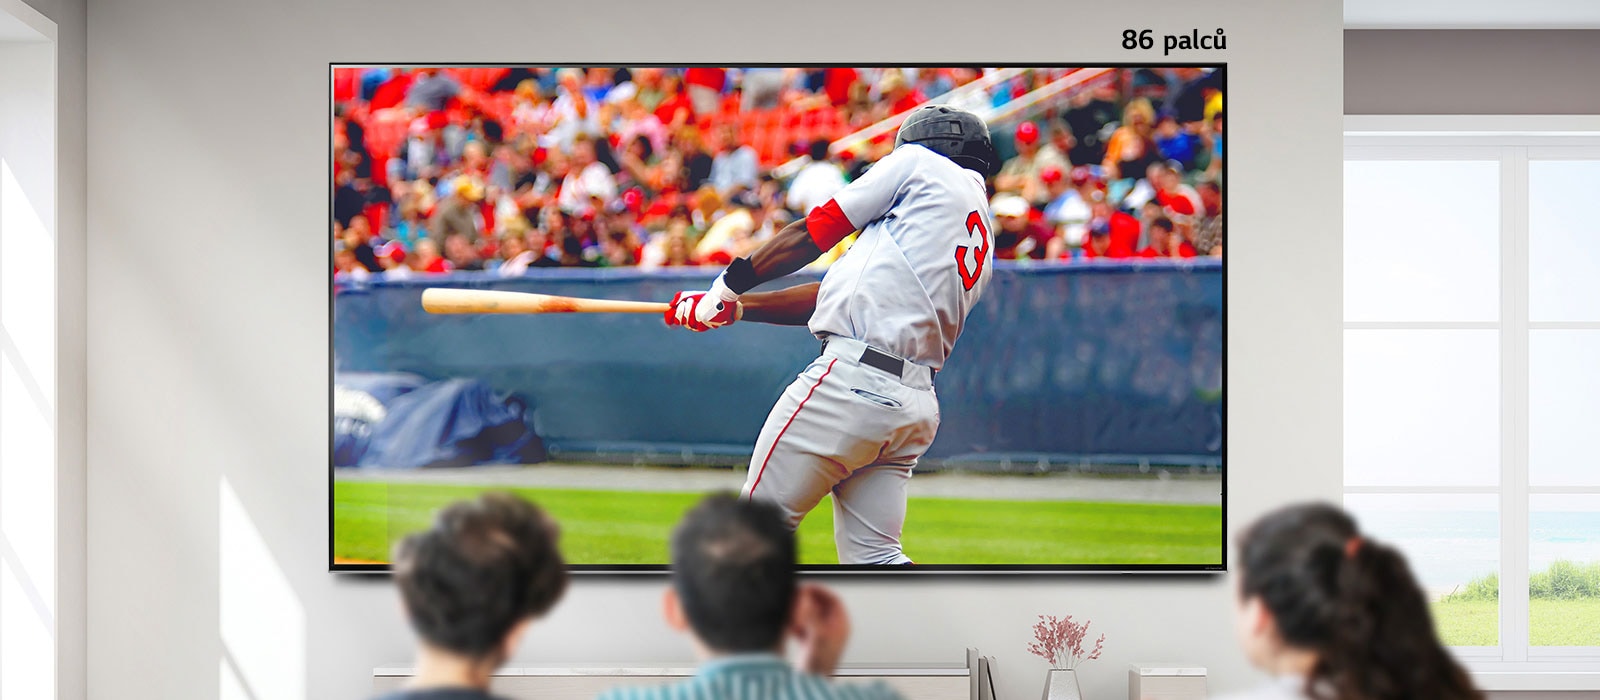 Posunovací obrázek tří lidí sledujících baseball na velkém televizoru namontovaném na stěně. Při posunování zleva doprava se obrazovka zvětší.